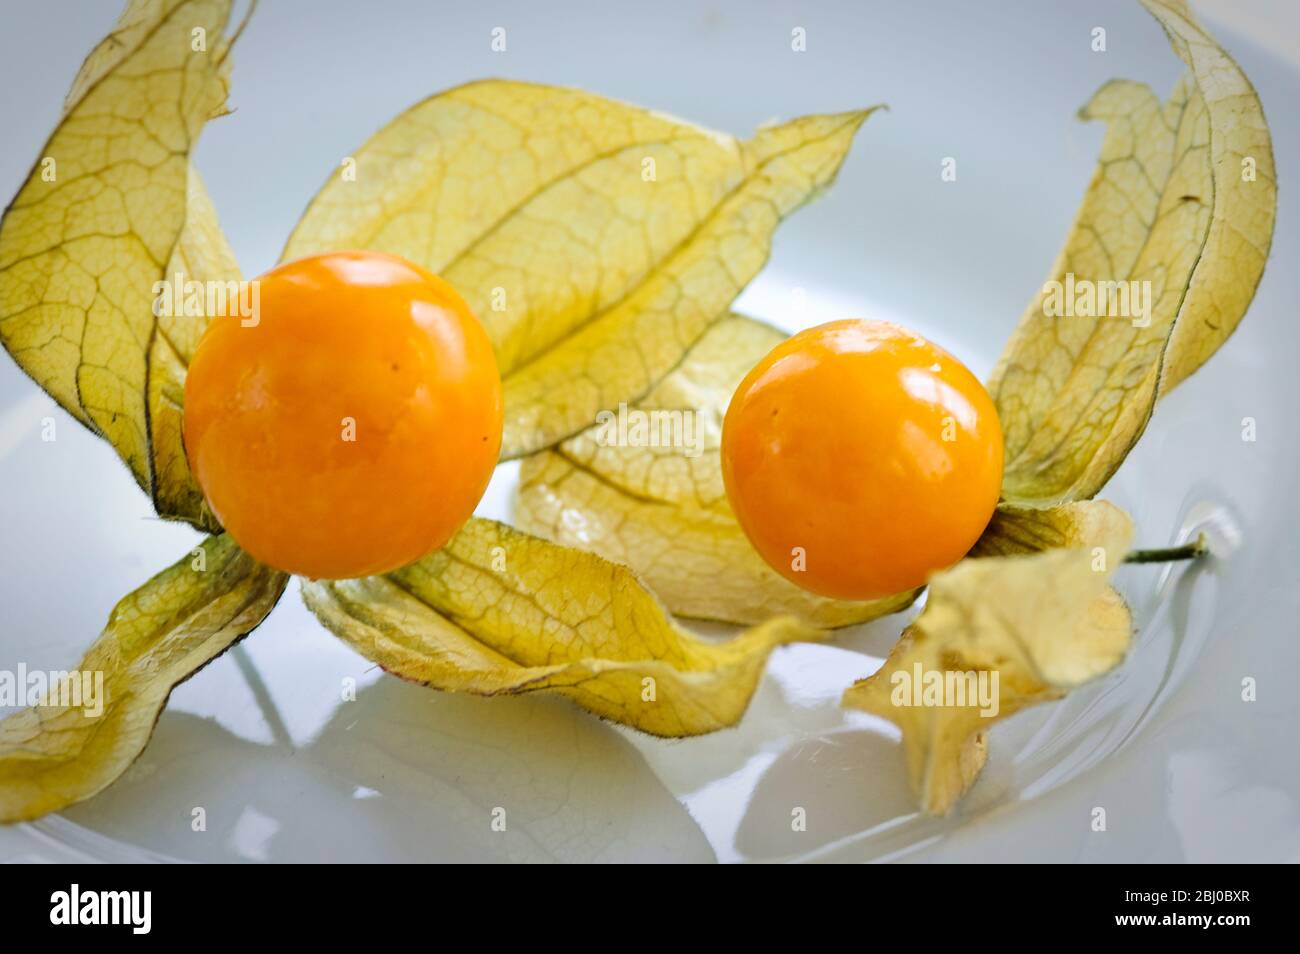 Zwei Phthysalis Früchte auf weißer Oberfläche - Stockfoto